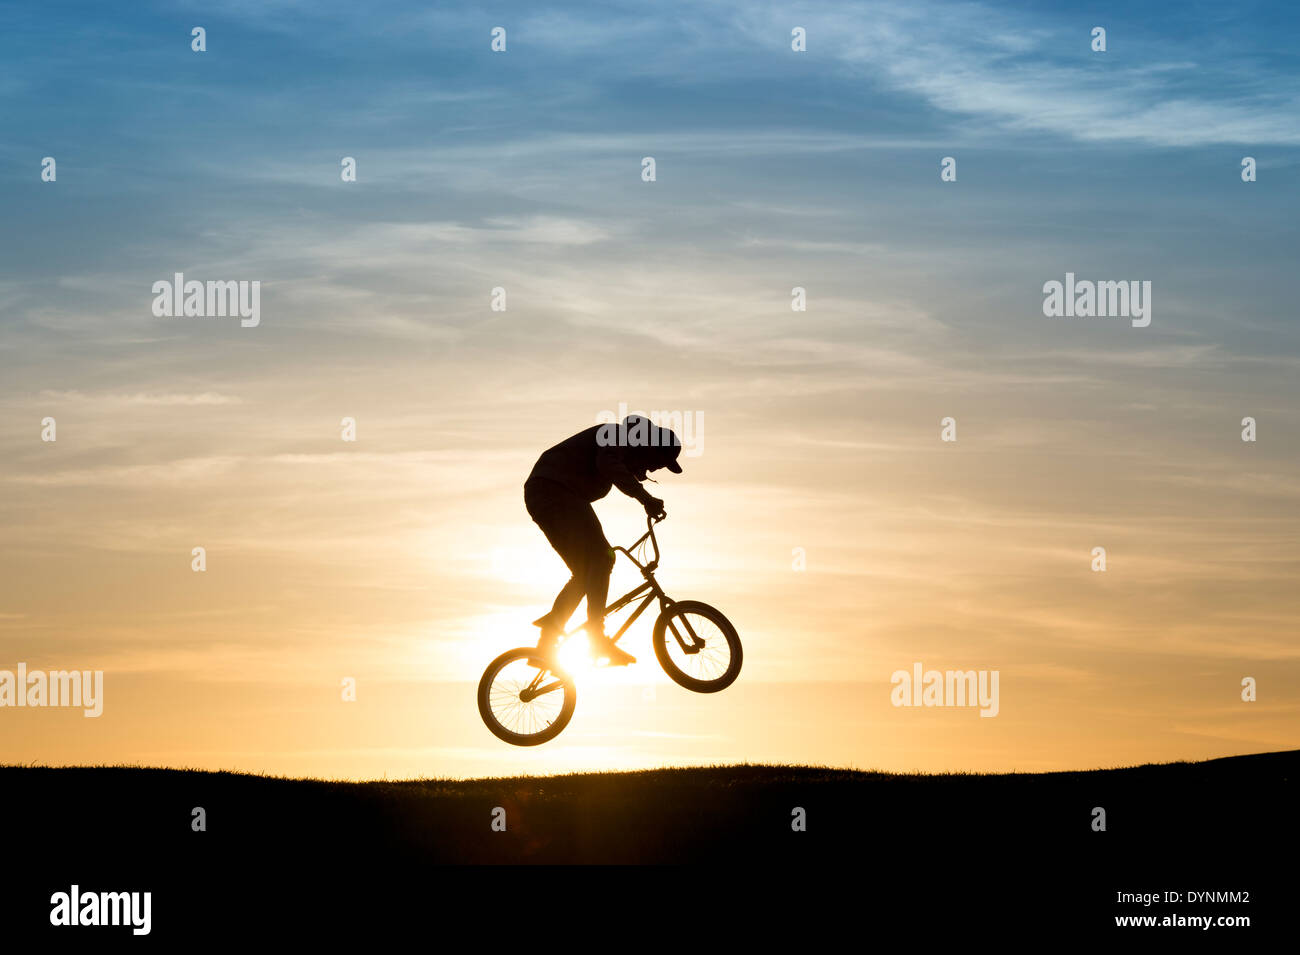 Junger Mann auf seinem BMX-Fahrrad in die Luft springen. Silhouette Stockfoto